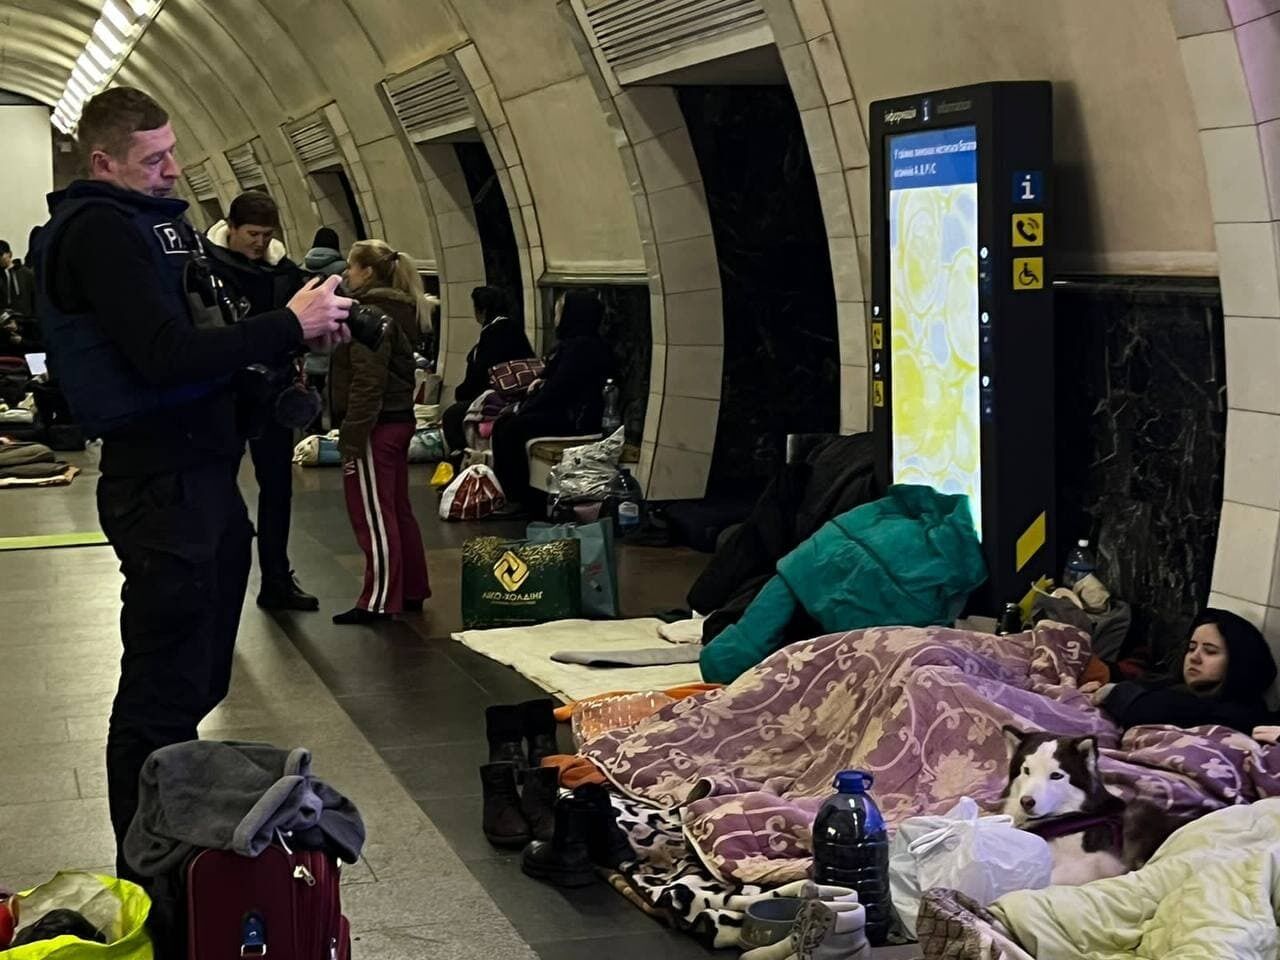 Иностранные журналисты увидели в каких условиях живут киевляне в метрополитене. Фото и видео